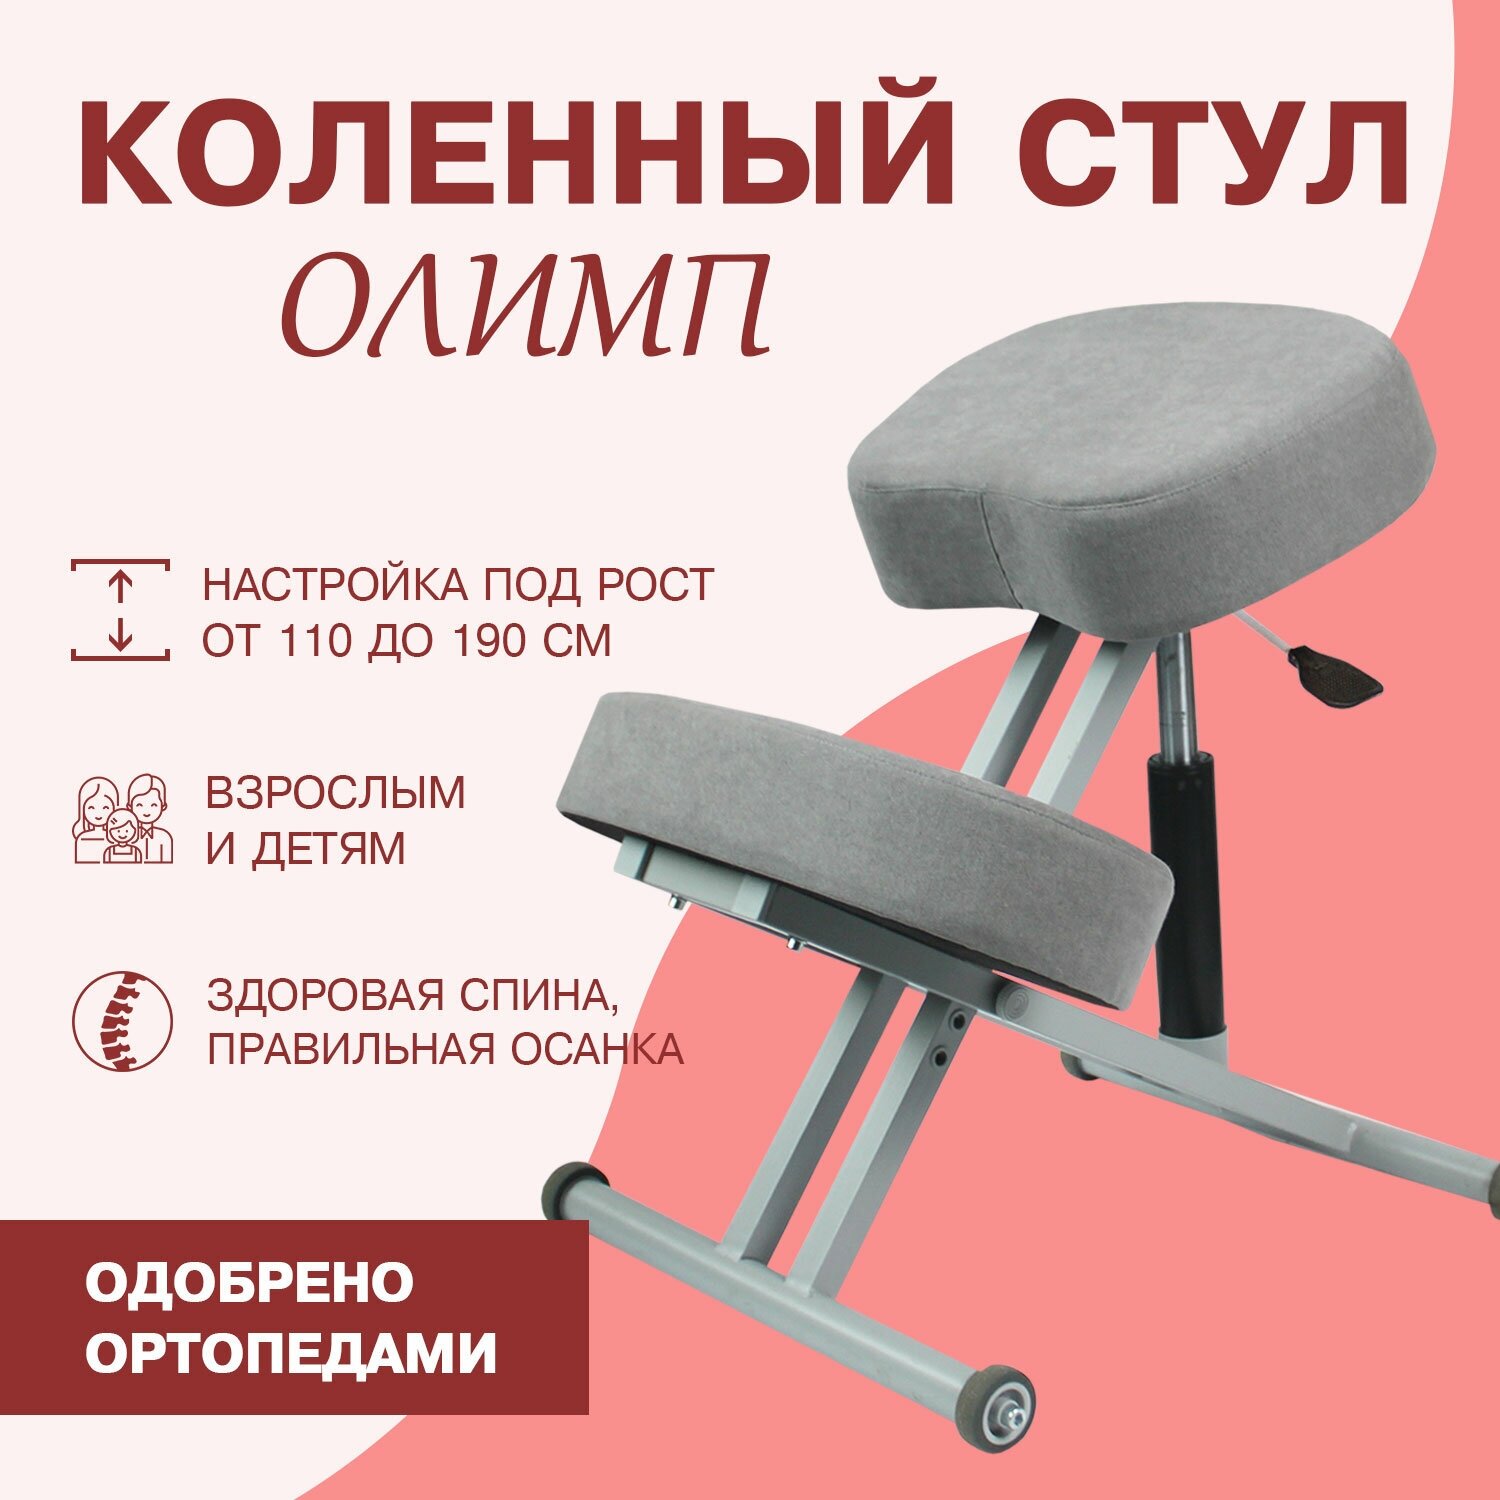 Эргономичный коленный ортопедический стул